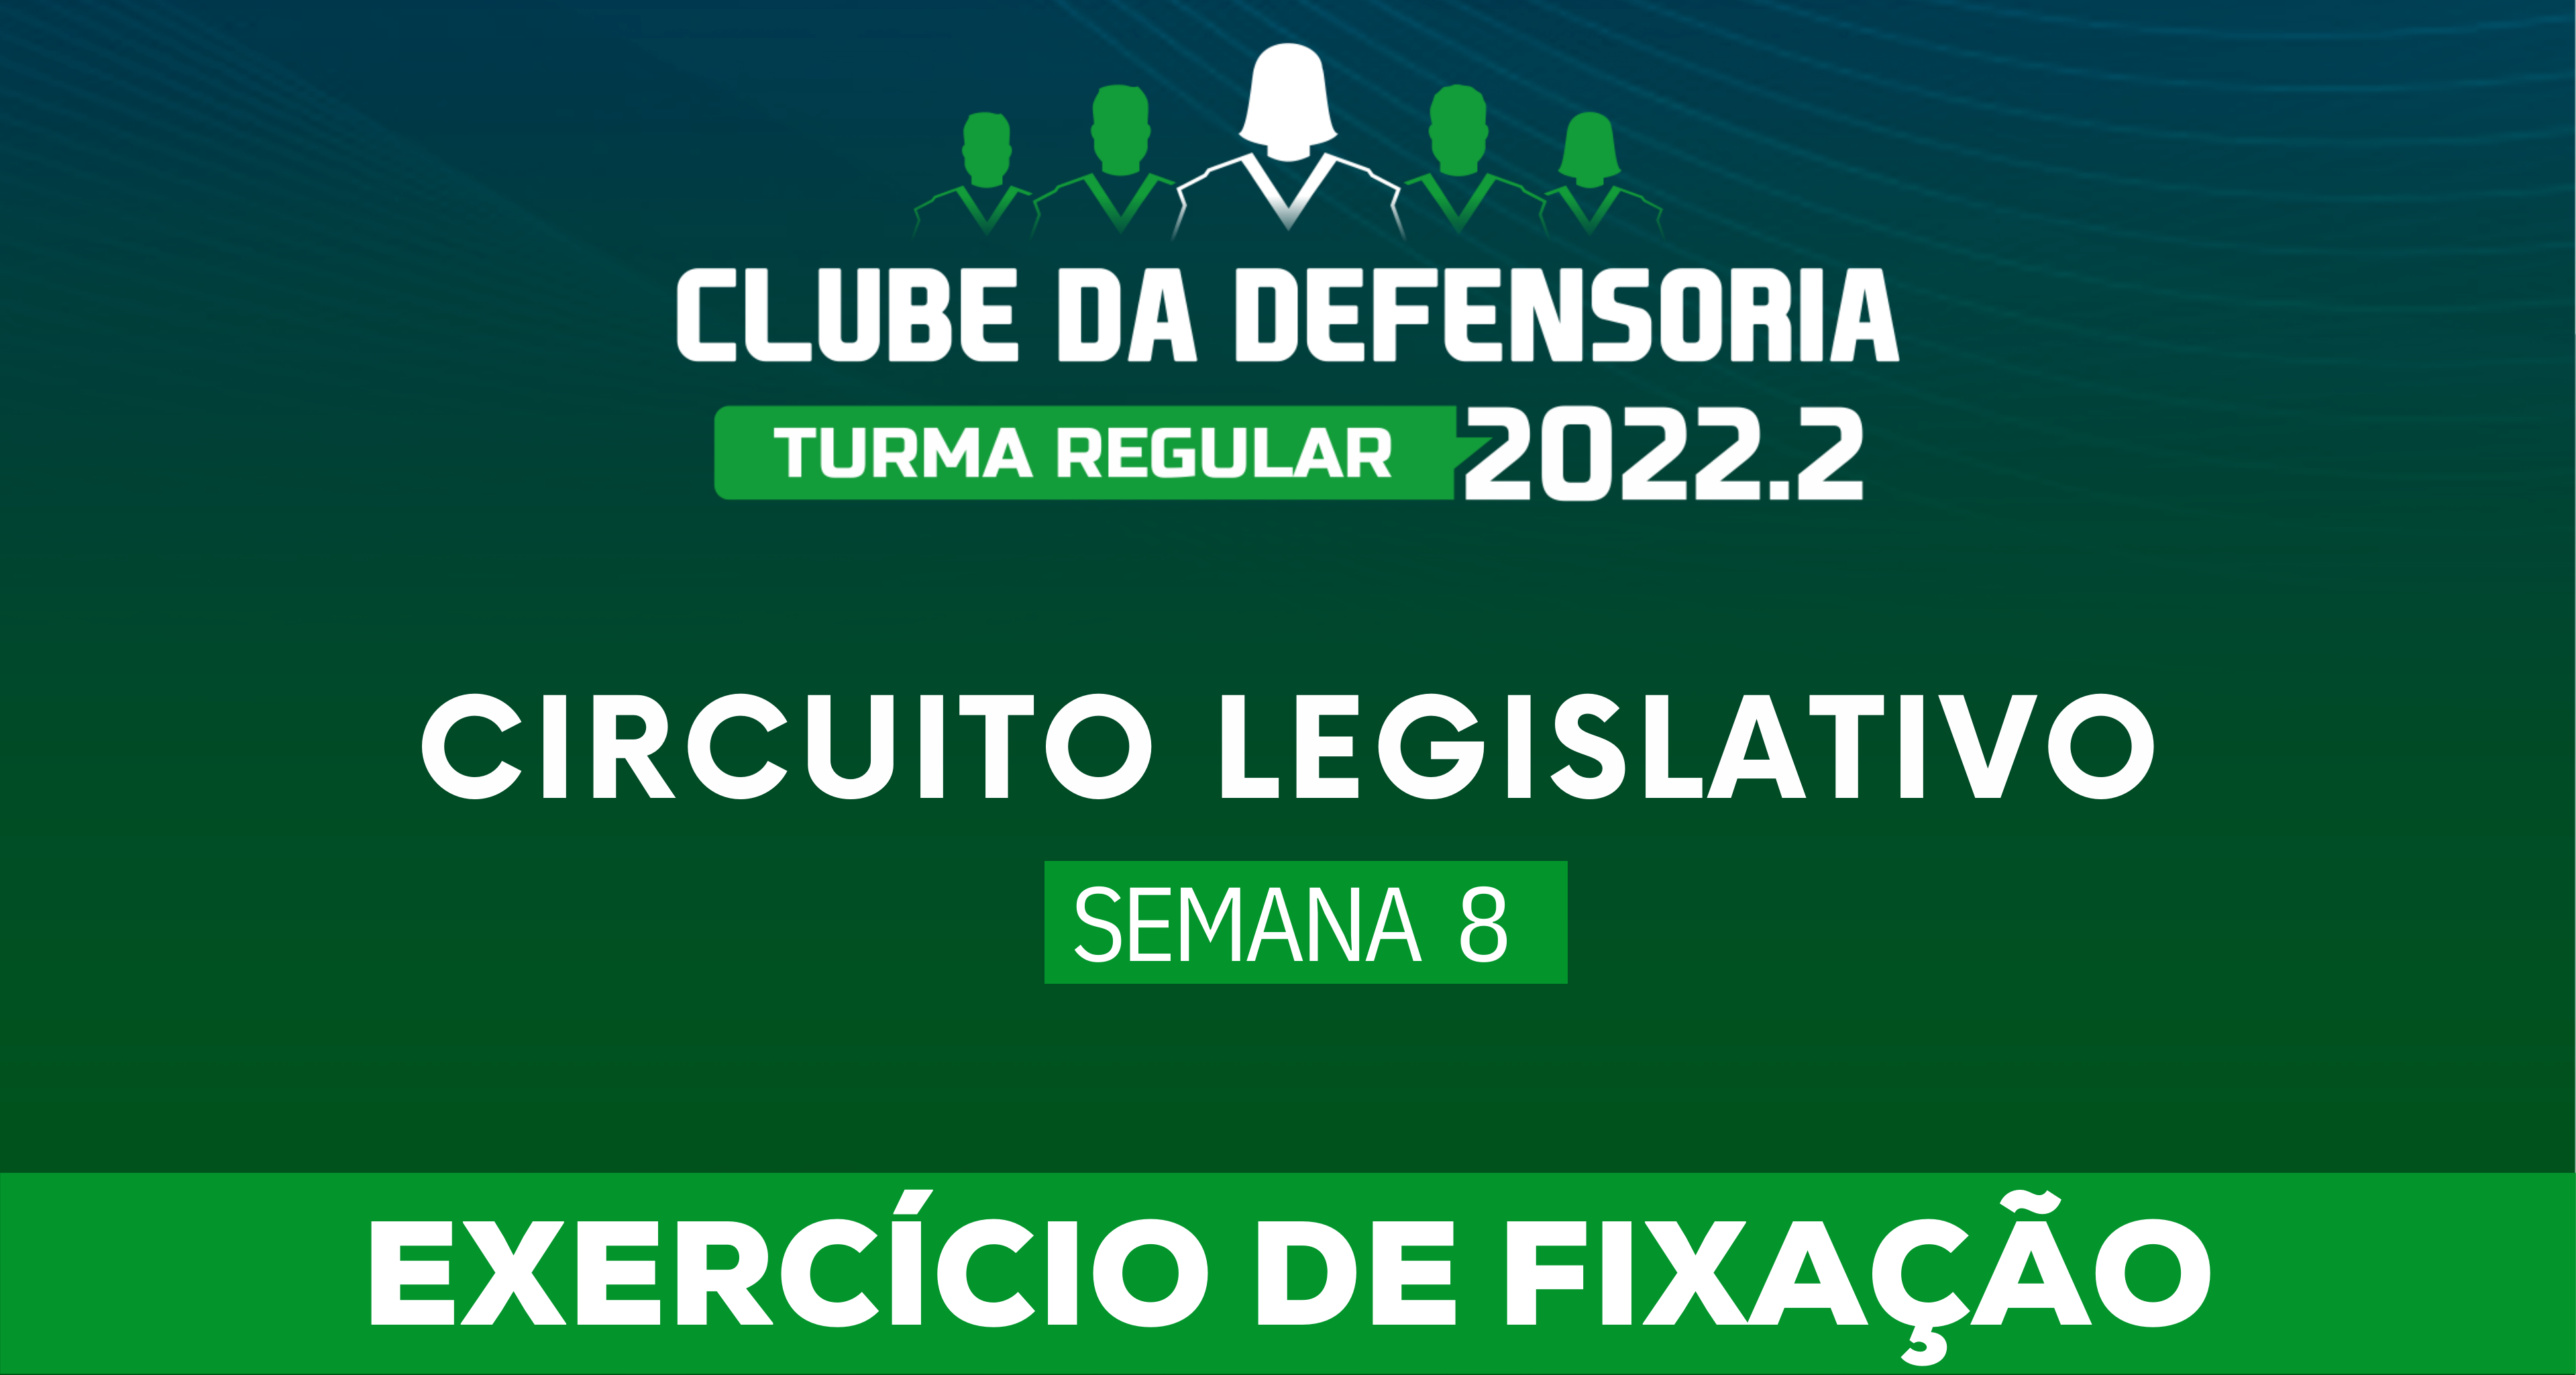 Circuito Legislativo 2022.2 (Clube da Defensoria - Semana 8)